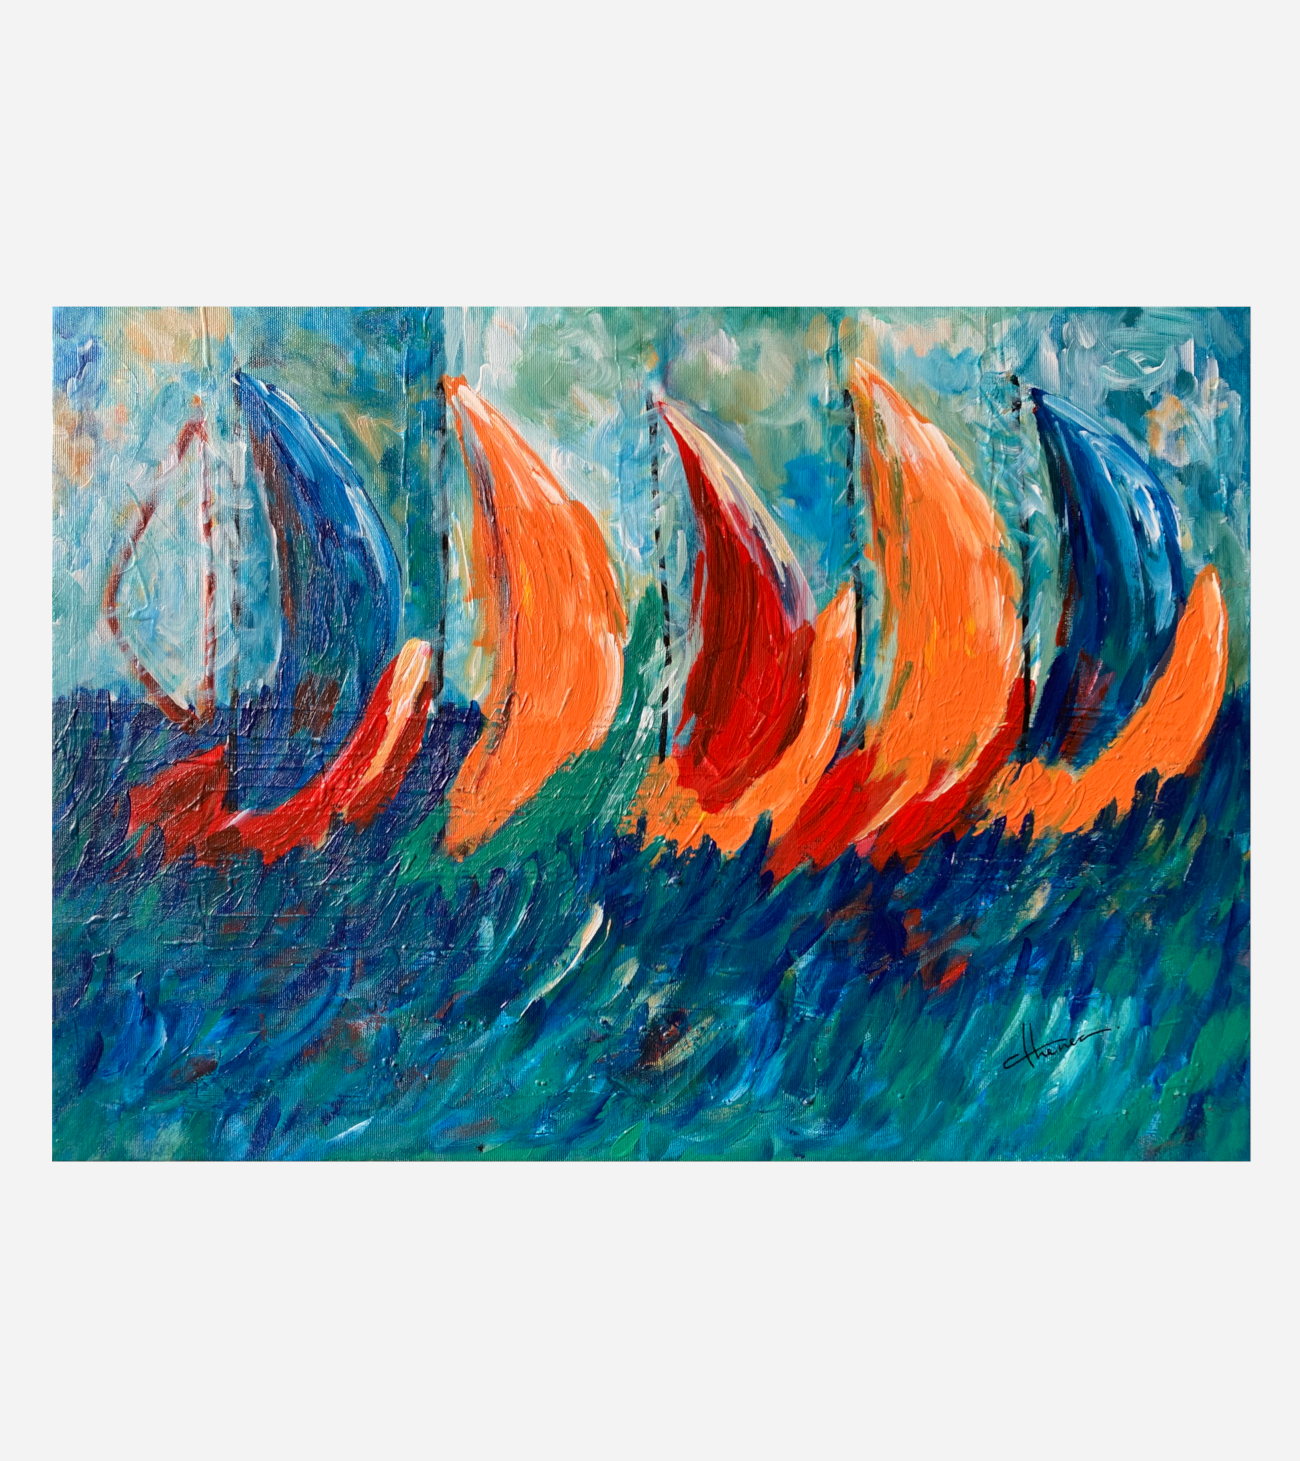 quadro barche a vela-viraje_turn_sailing boat_spatula_blue_orange_colors_sea_clouds_sky_athenea sosa